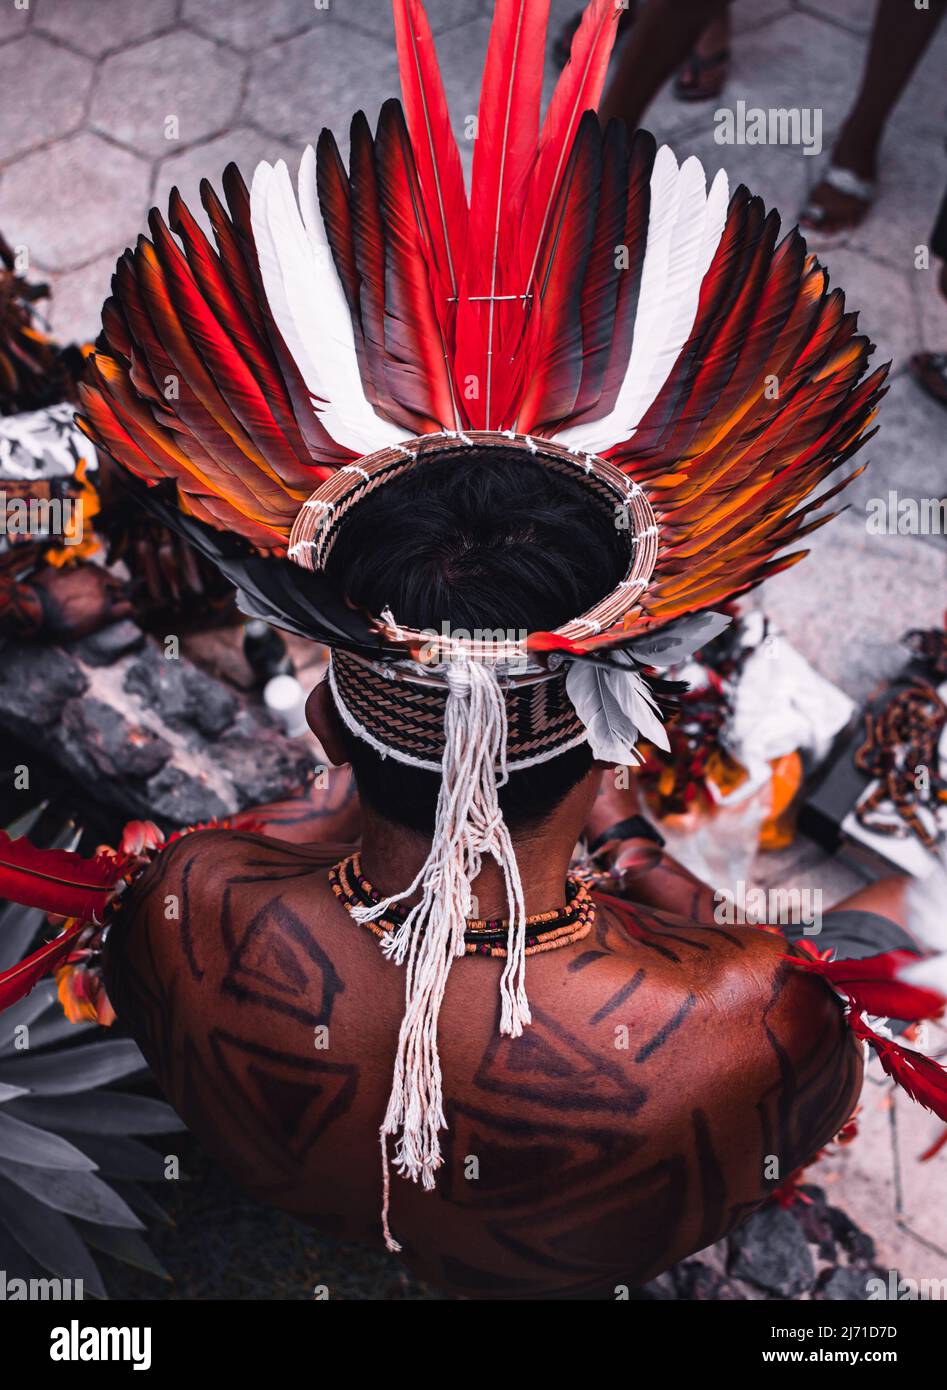 Homme indigène d'une tribu amazonienne brésilienne portant un headaddress de plumes coloré connu sous le nom de cocar. Rivière Xingu, Amazone, Brésil. 2009. Banque D'Images